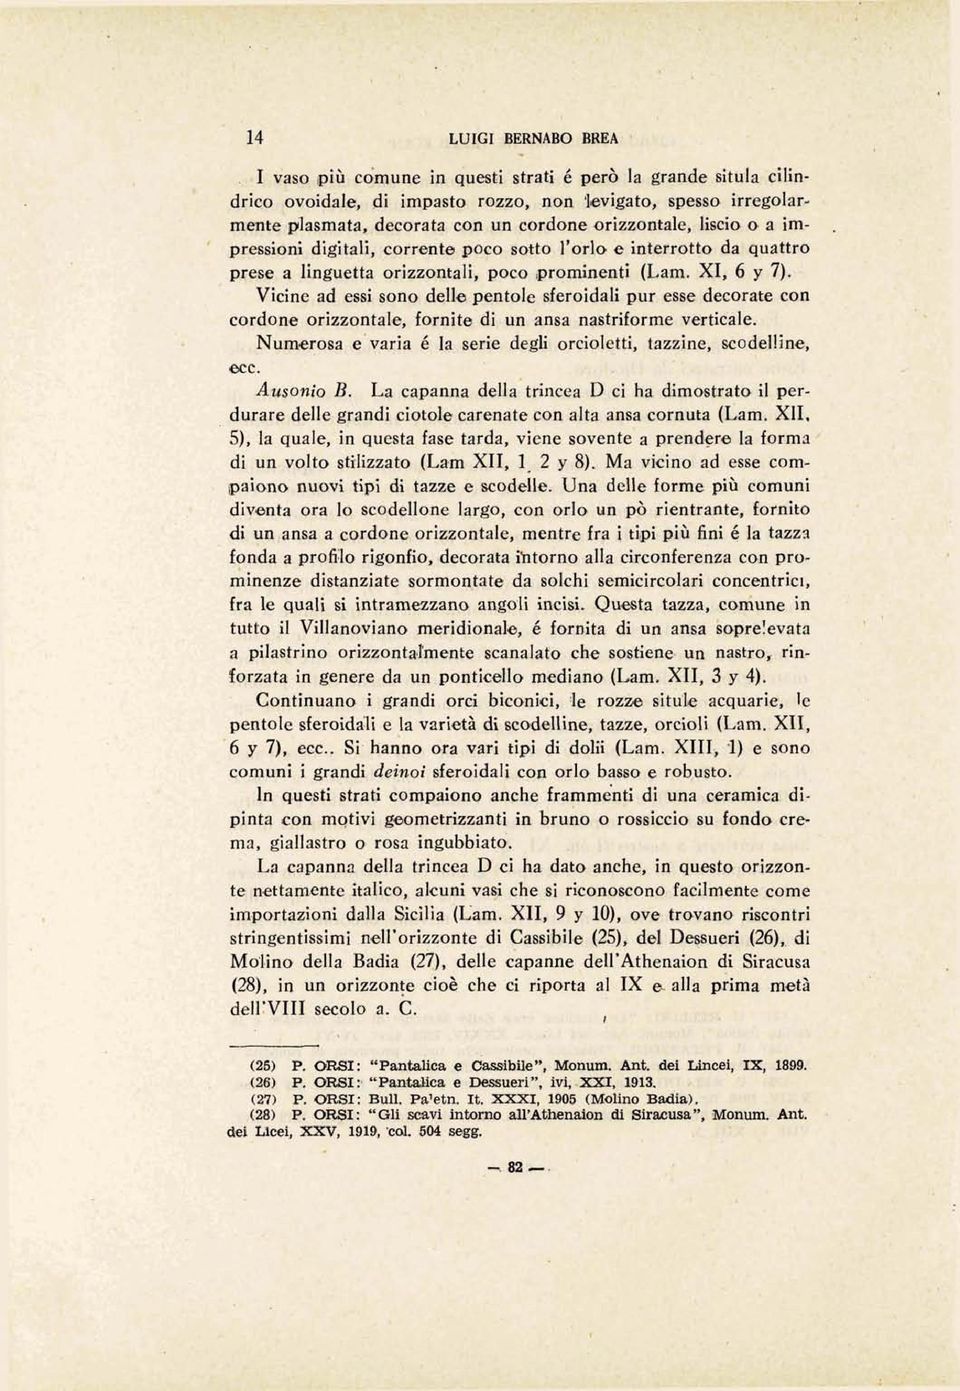 ' presrsiani digitali, corrente poco eotto l'orlo a inte~rstto da quattro prese a linguetta orizzantali, poco iprominenti (Lam. XI, 6 y 7).